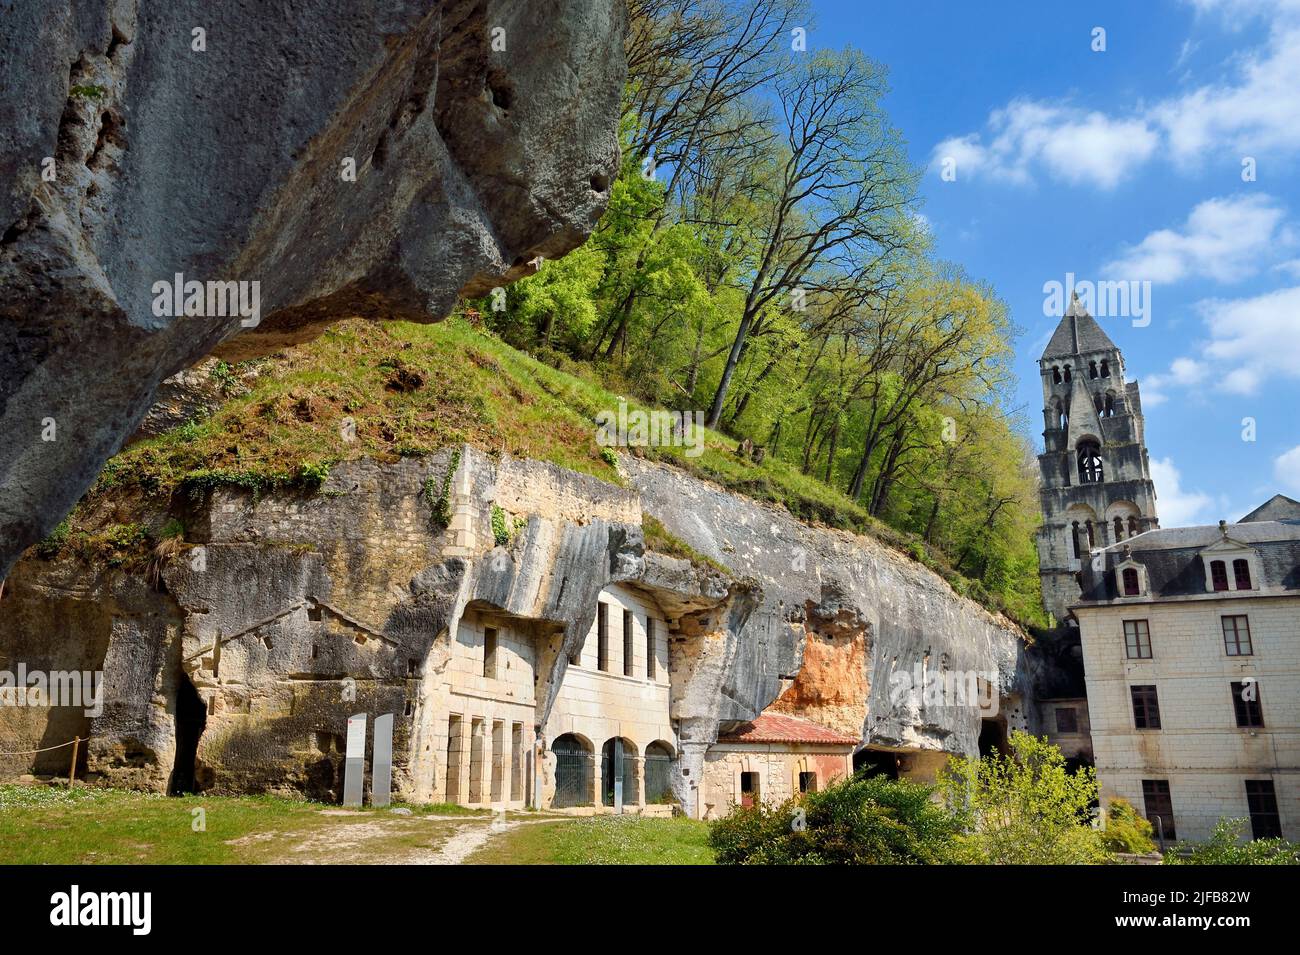 Frankreich, Dordogne, Brantome, benediktinerabtei Saint Pierre, die alten Troglodyten-Wohnungen und die Höhlen in den Klippen und der Glockenturm der Abteikirche (11.. Jahrhundert) im Hintergrund Stockfoto